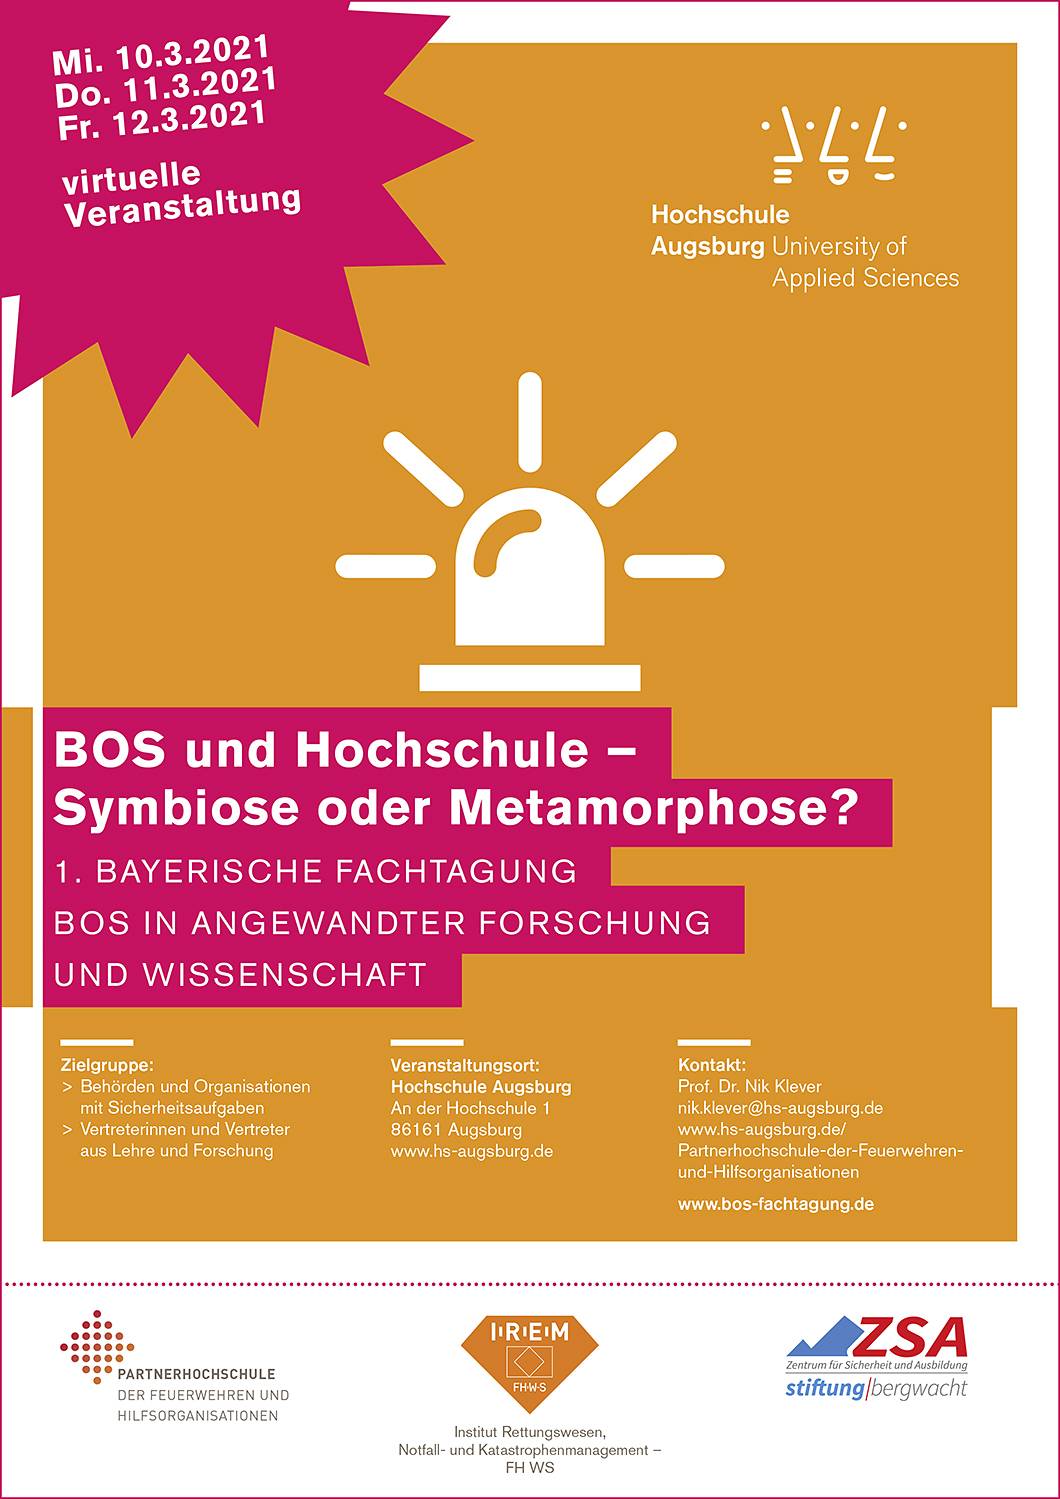 BOS und Hochschule – Symbiose oder Metamorphose? 1. Bayerische Fachtagung BOS in angewandter Forschung und Wissenschaft